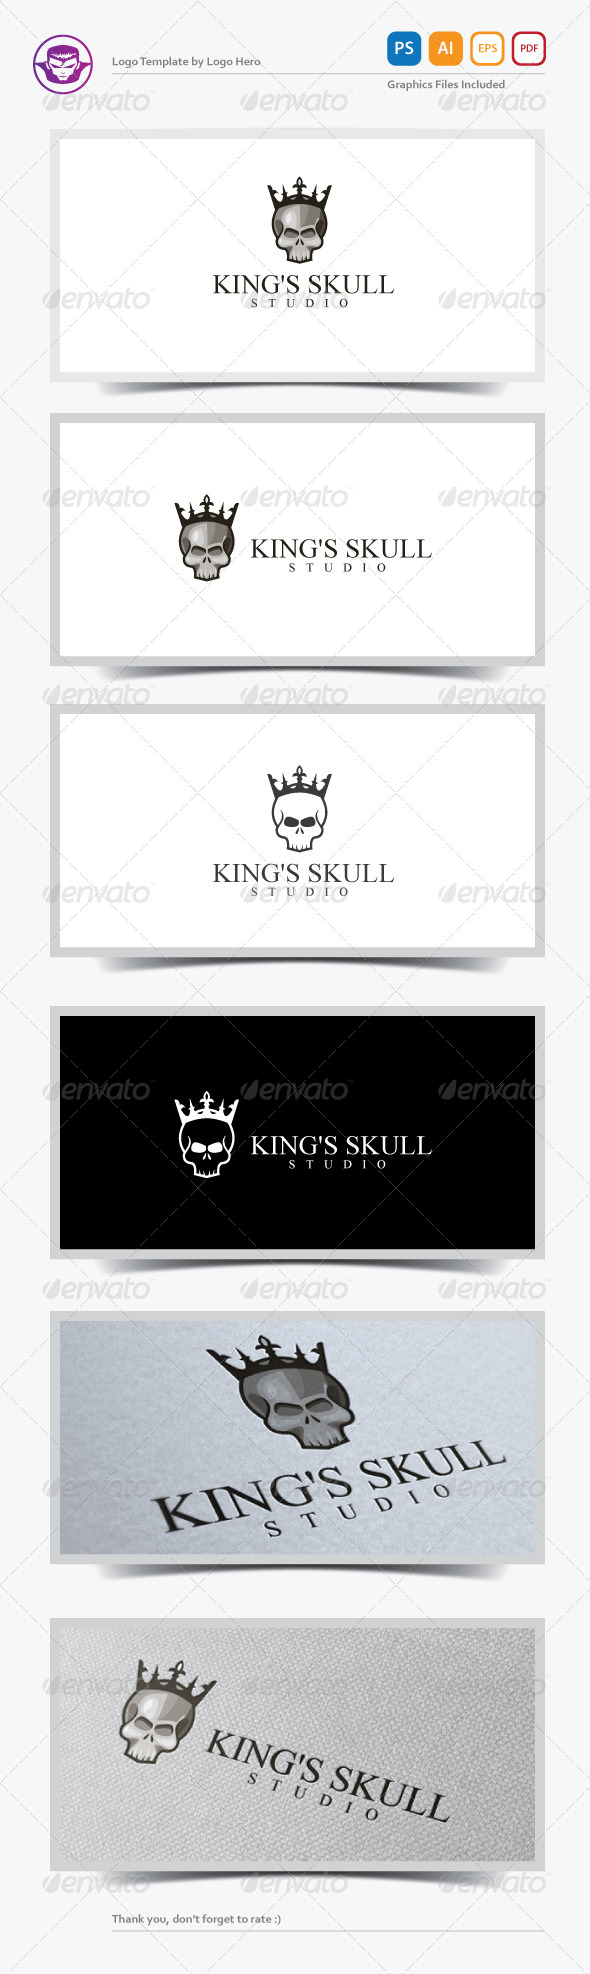 King's Skull Logo Template